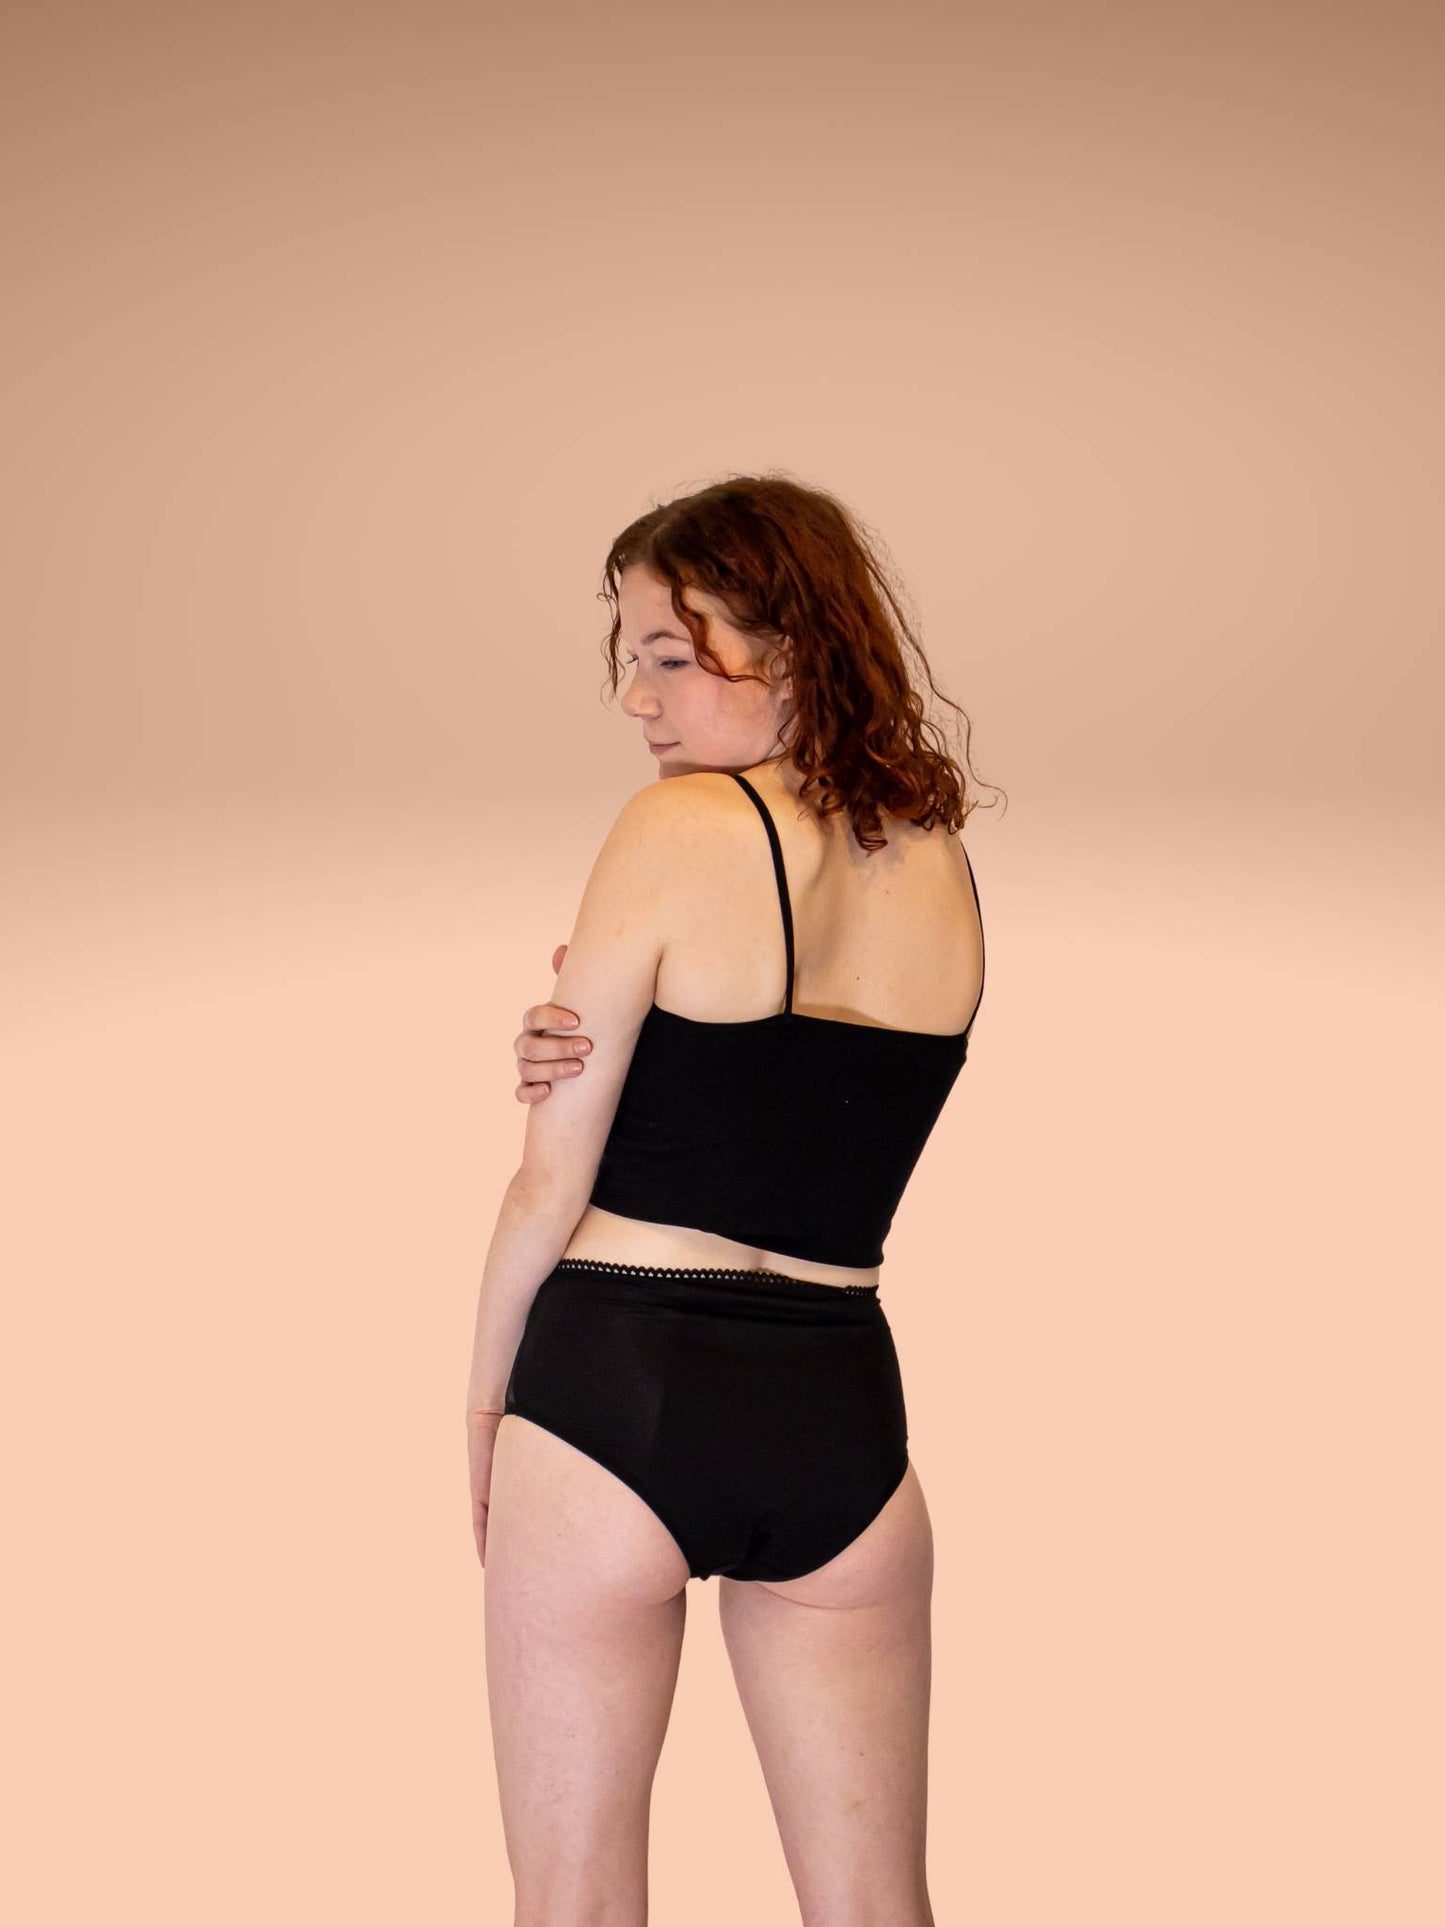 La Culotte menstruelle Taille-haute abondant-nuit +++ ( 1x ou pack 3X)